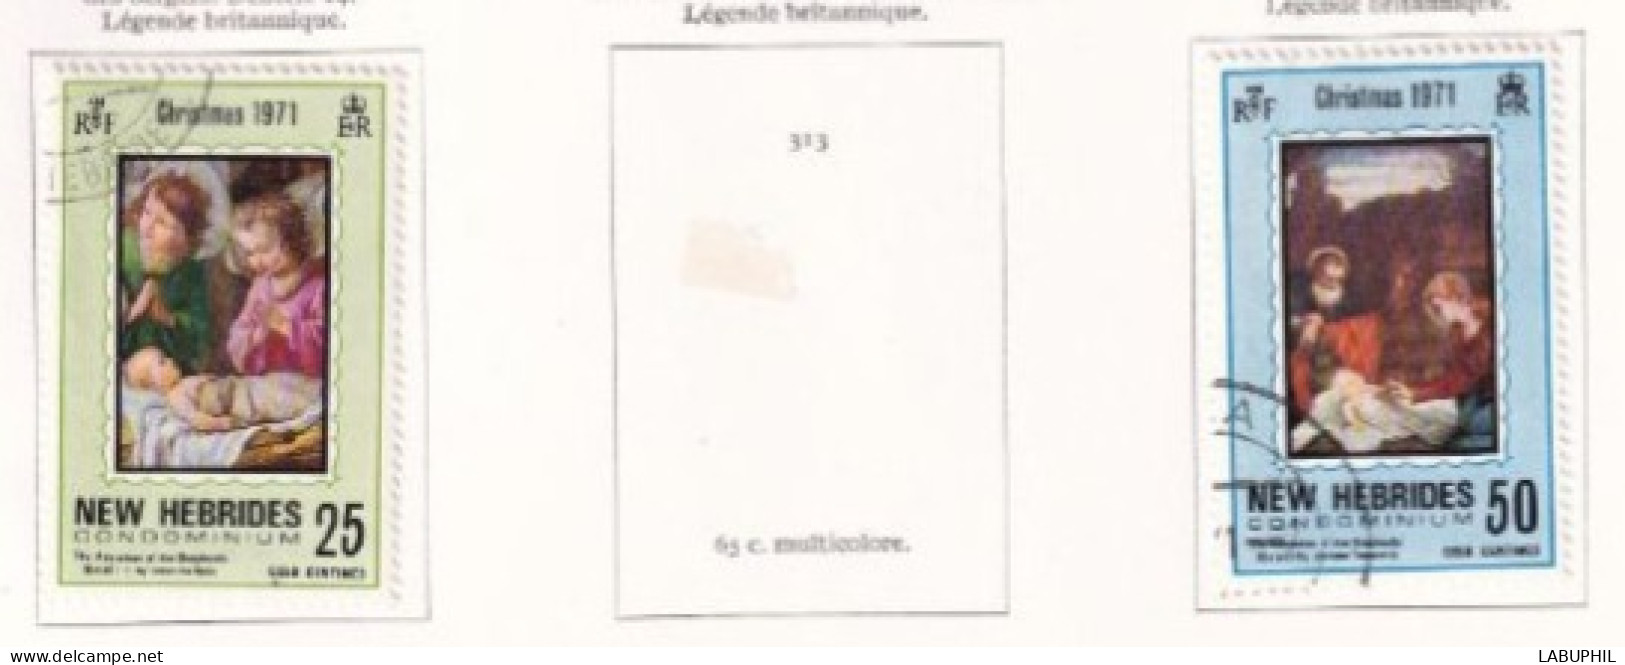 NOUVELLES HEBRIDES Dispersion D'une Collection Oblitéré Et Mlh   1971 - Gebraucht